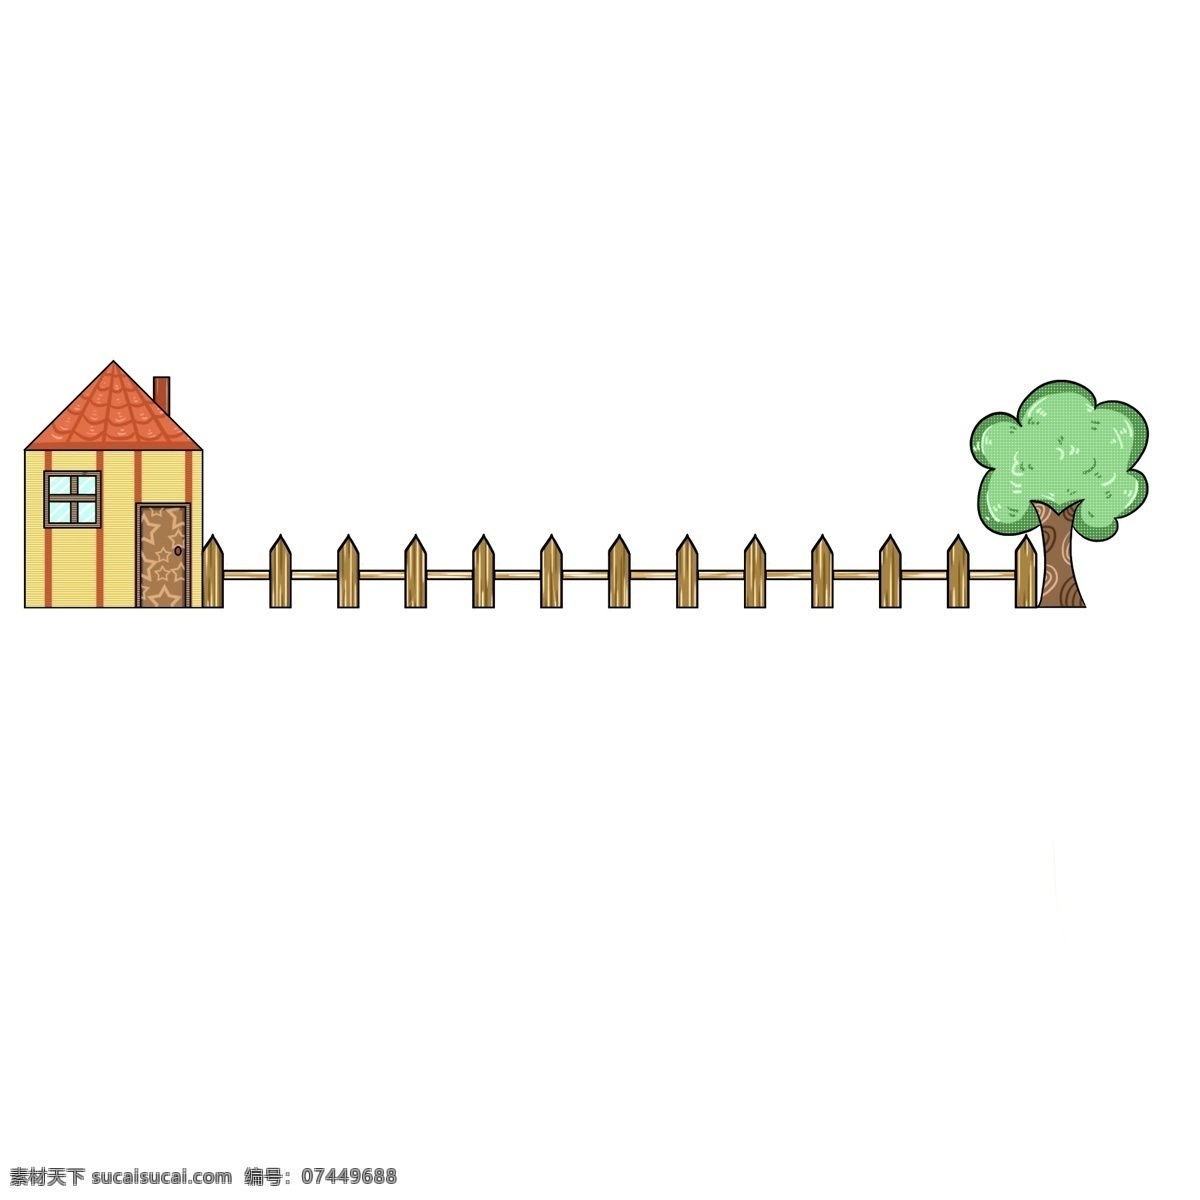 房屋 栅栏 树木 分割线 树木分割线 栅栏分割线 小房子分割线 分割线装饰 创意分割线 分割线插画